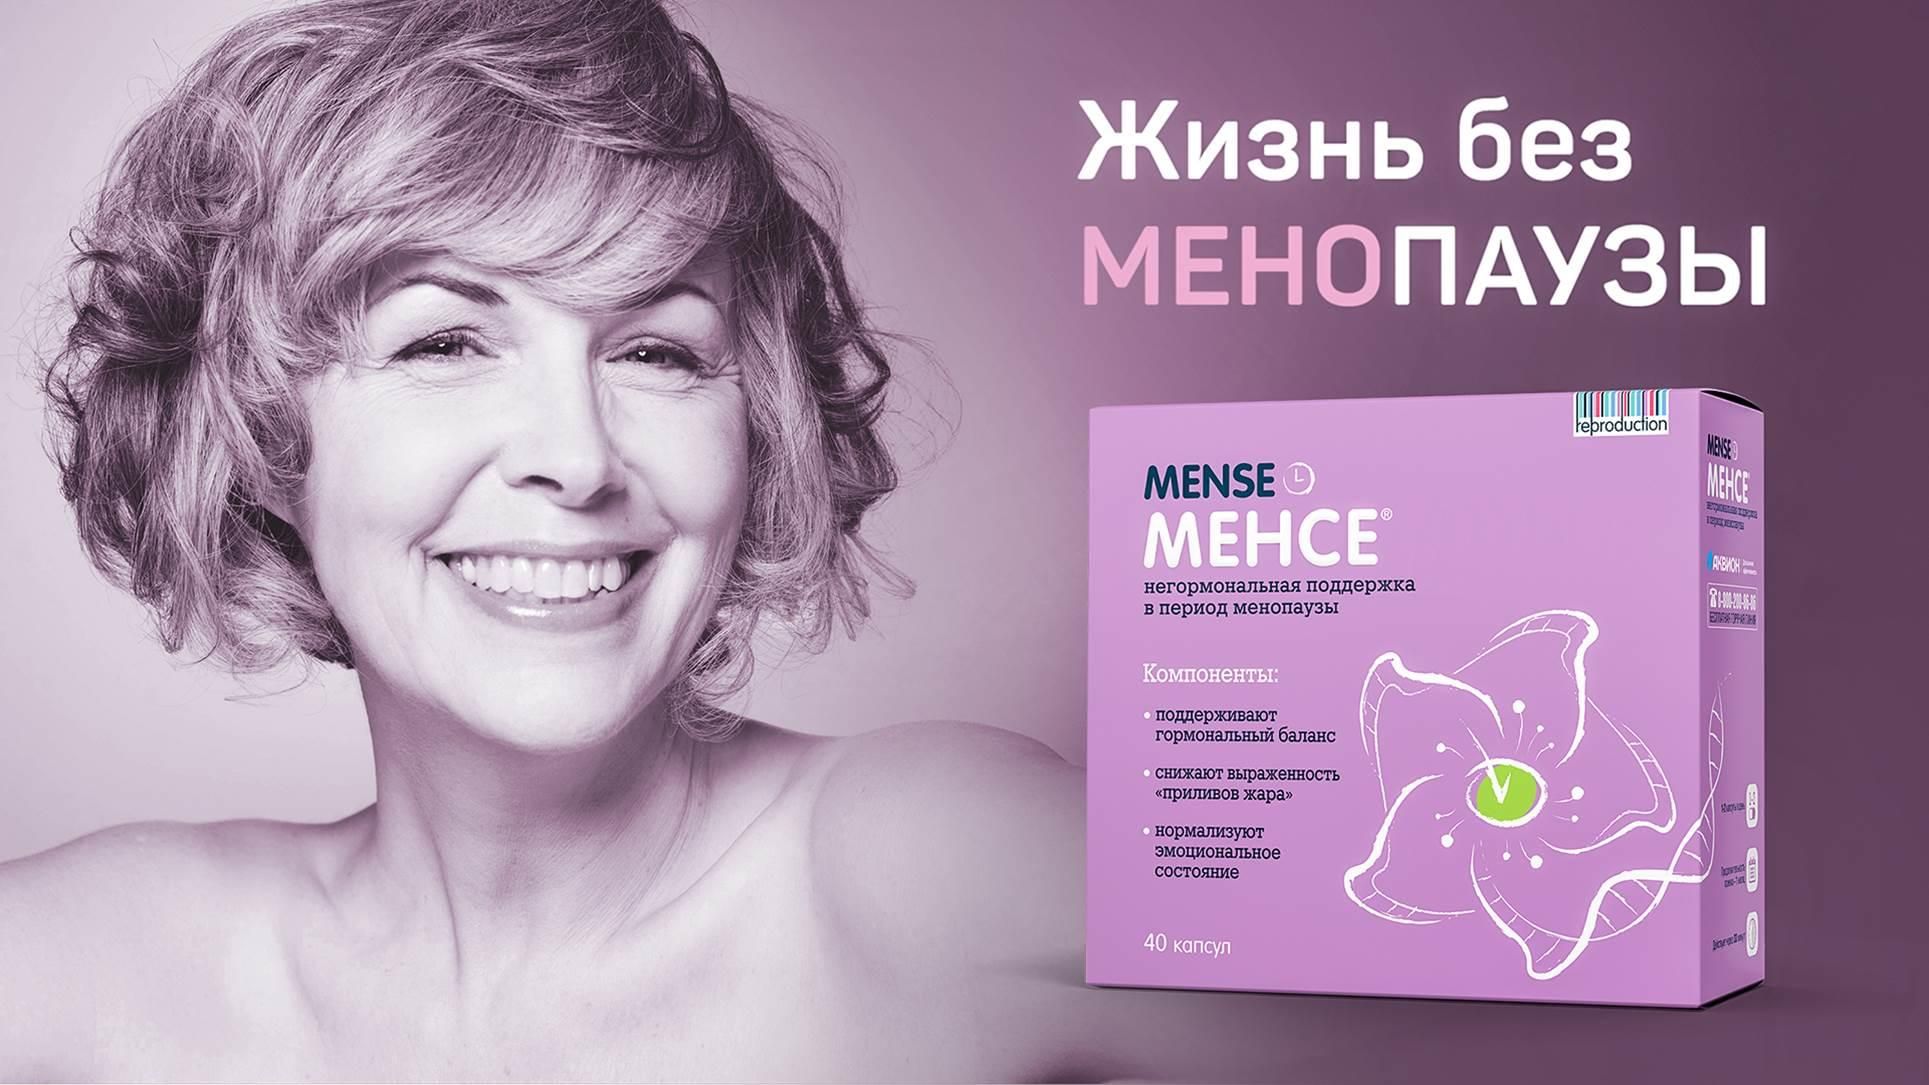 Менопауза таблетки инструкция по применению. Менсе витамины для женщин. Таблетки от менопаузы. Таблетки при климаксе. Лекарство от приливов при климаксе.